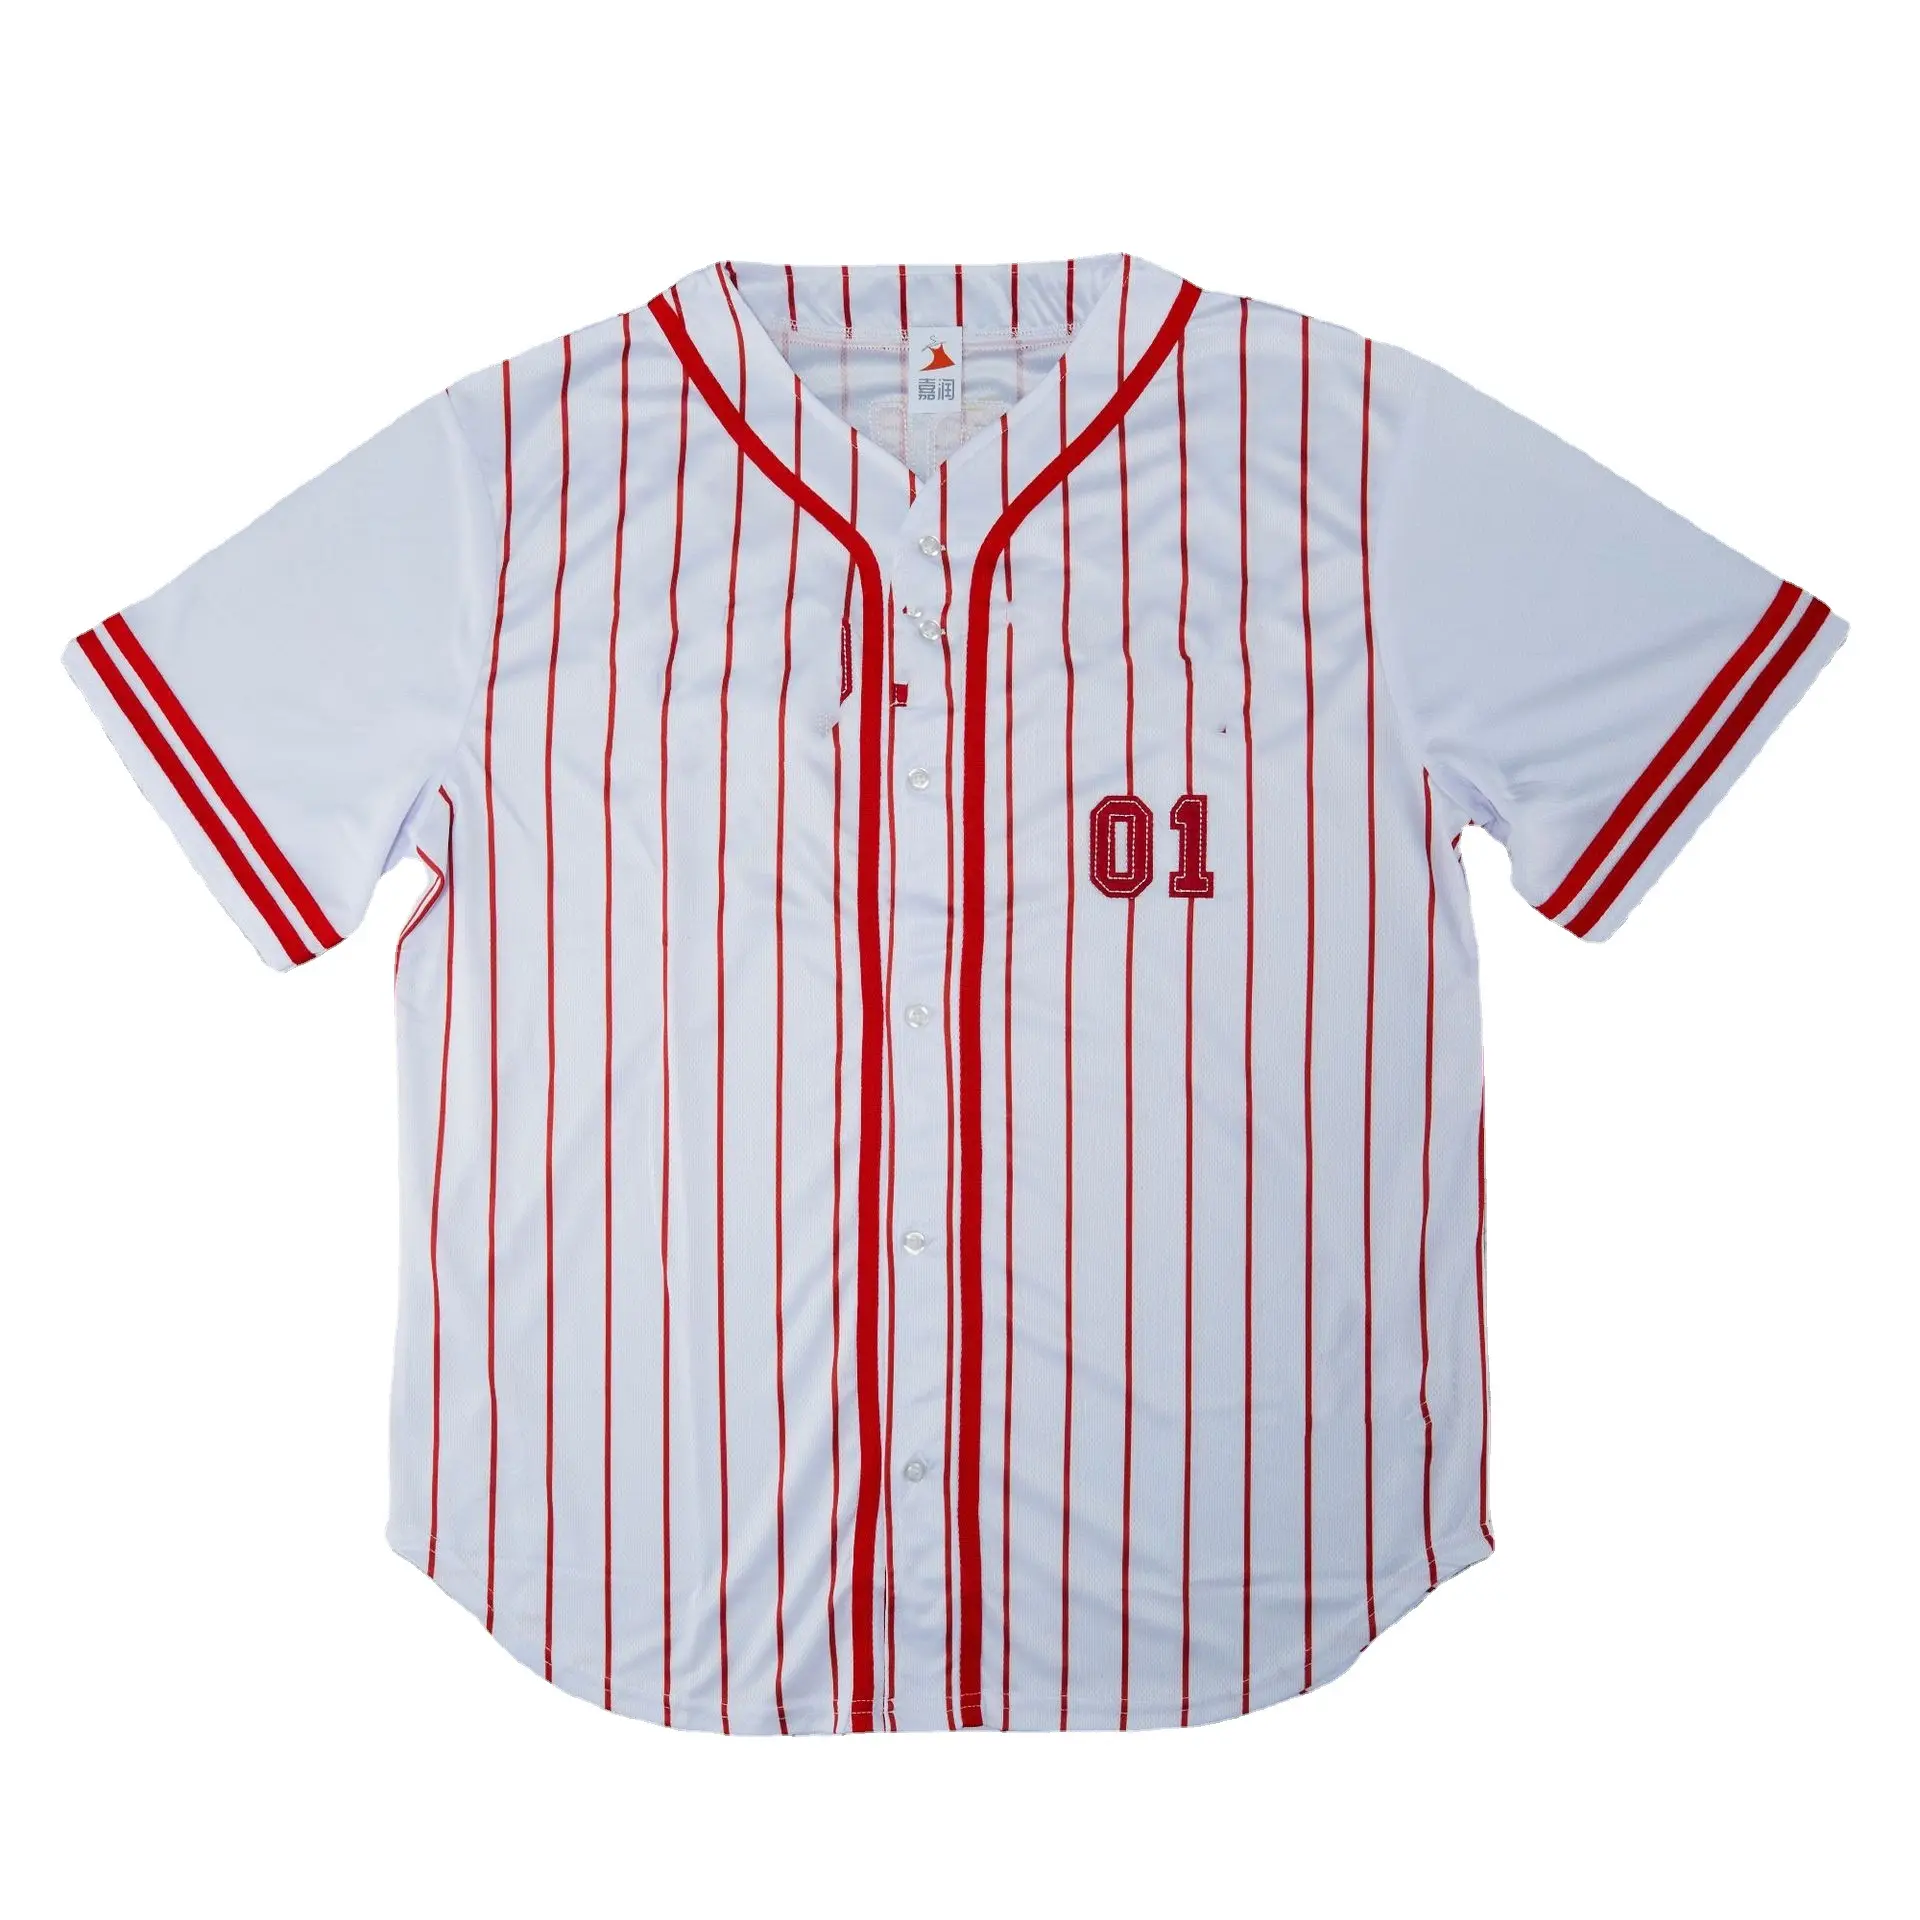 사용자 정의 스트라이프 디자인 스티치 레트로 뉴욕 야구 팀 저지 승화 스포츠 착용 플레이어 저렴한 가격 야구 저지